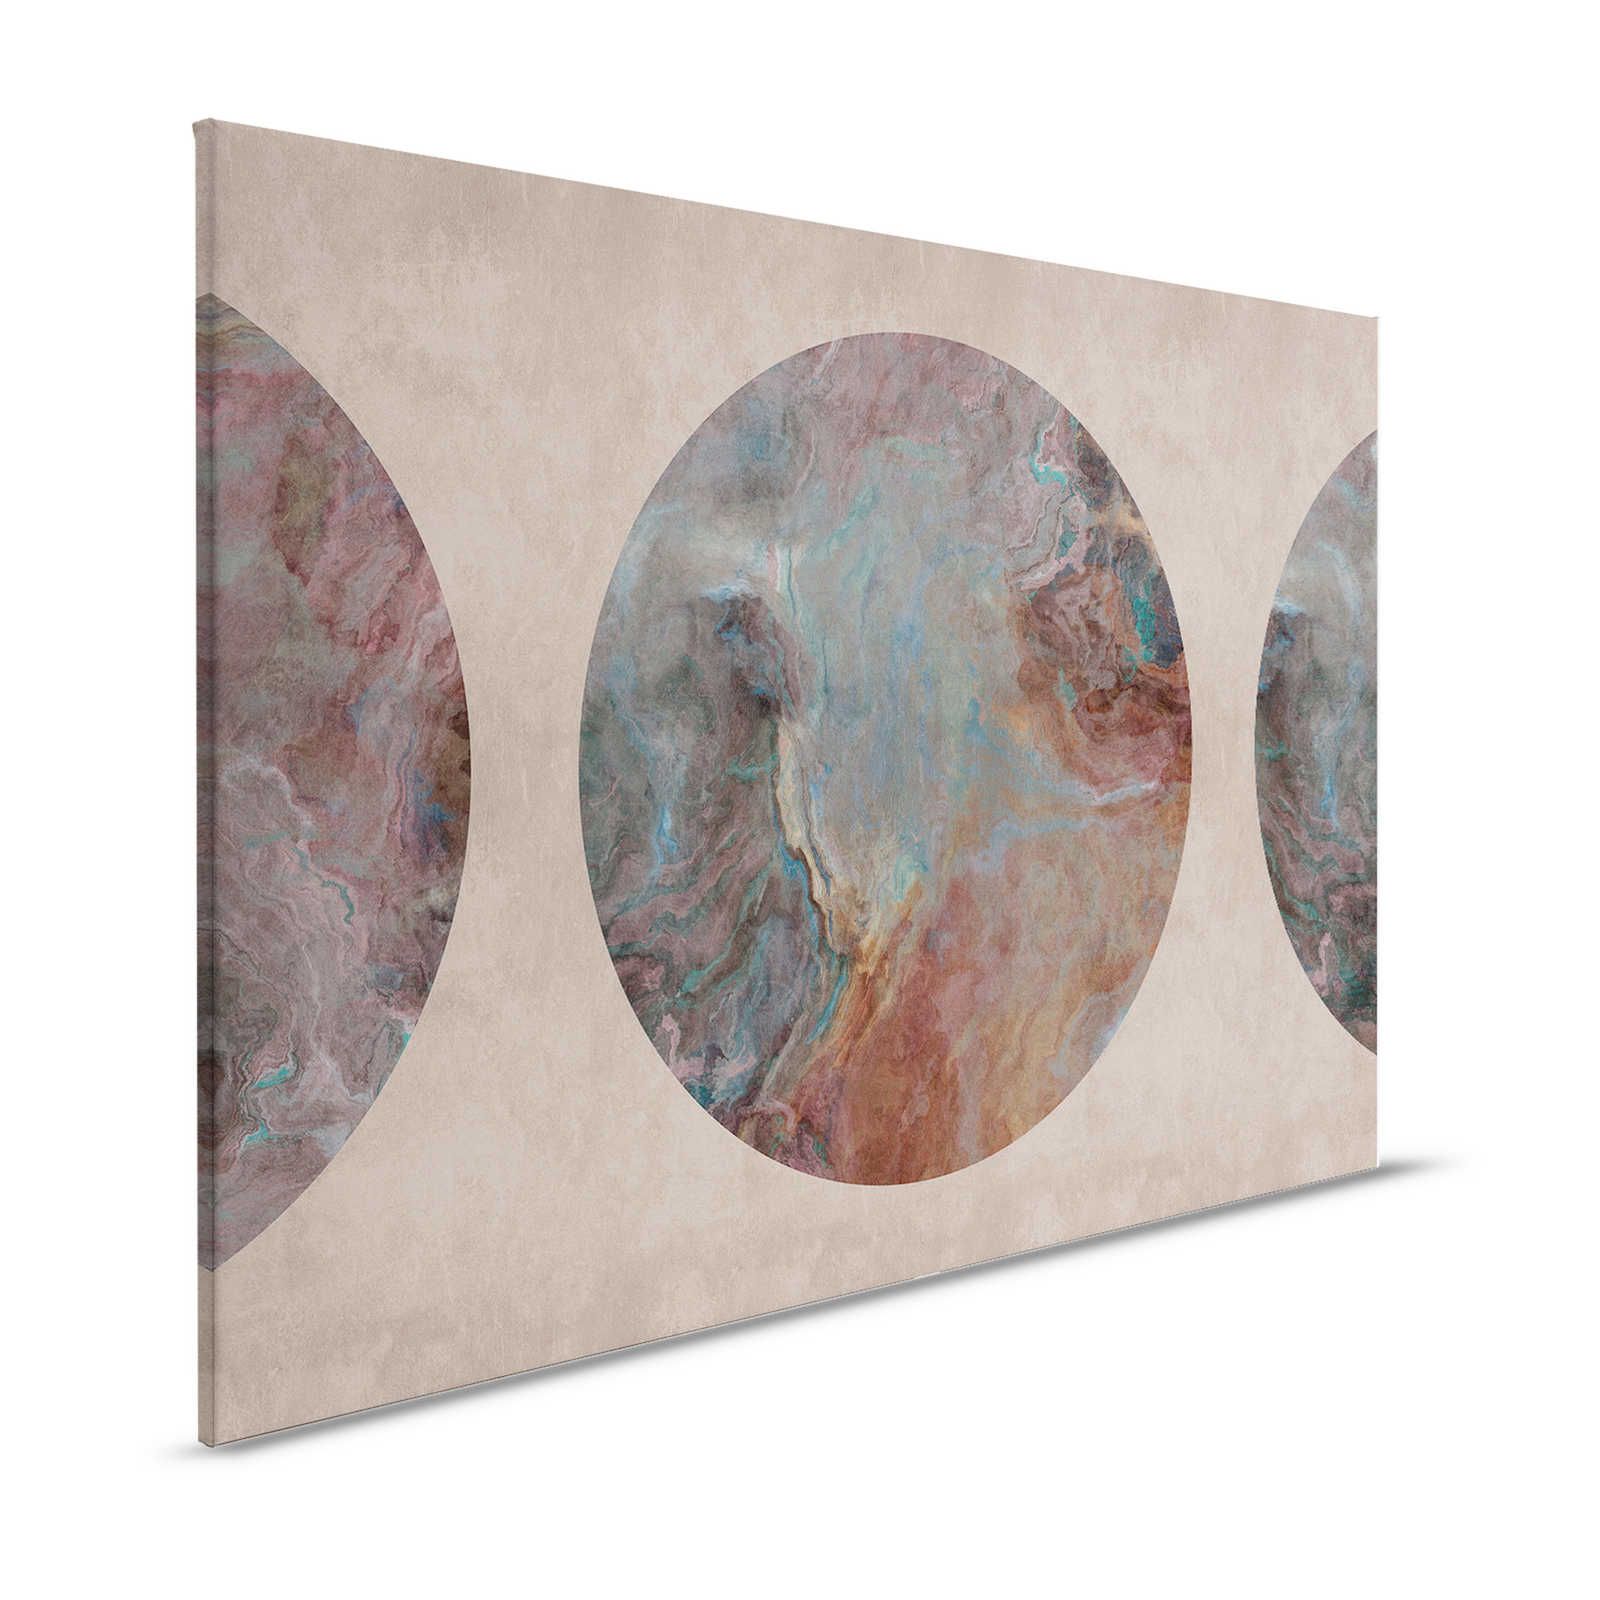 Giove 1 - Quadro su tela con motivo cerchio di pietra marmorizzato - 1,20 m x 0,80 m
